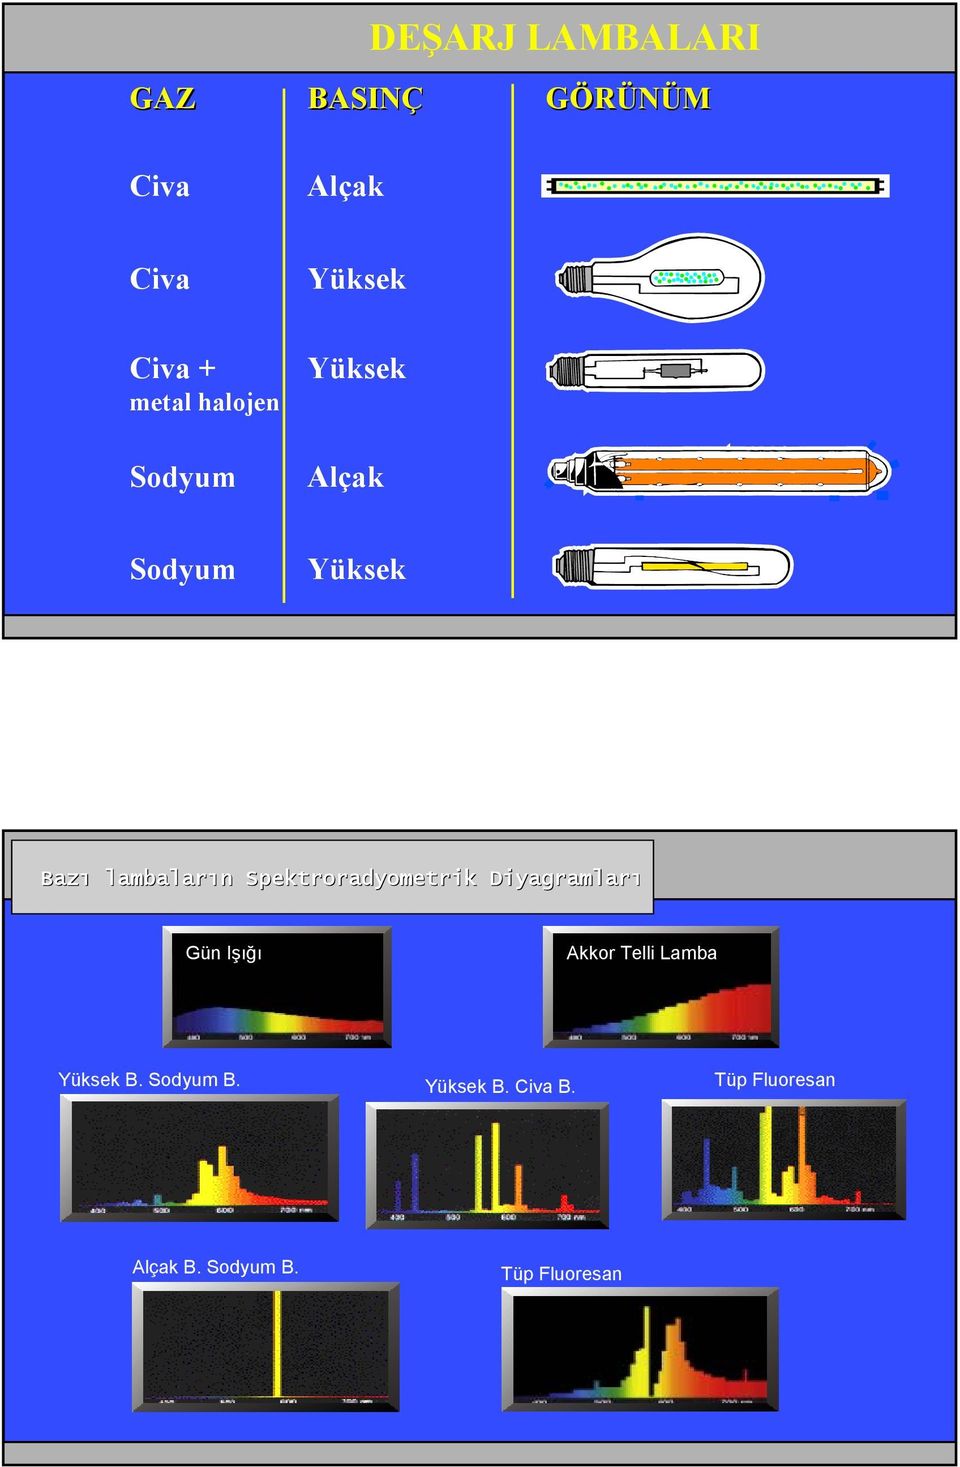 Spektroradyometrik Diyagramları Gün Işığı Akkor Telli Lamba Yüksek B.